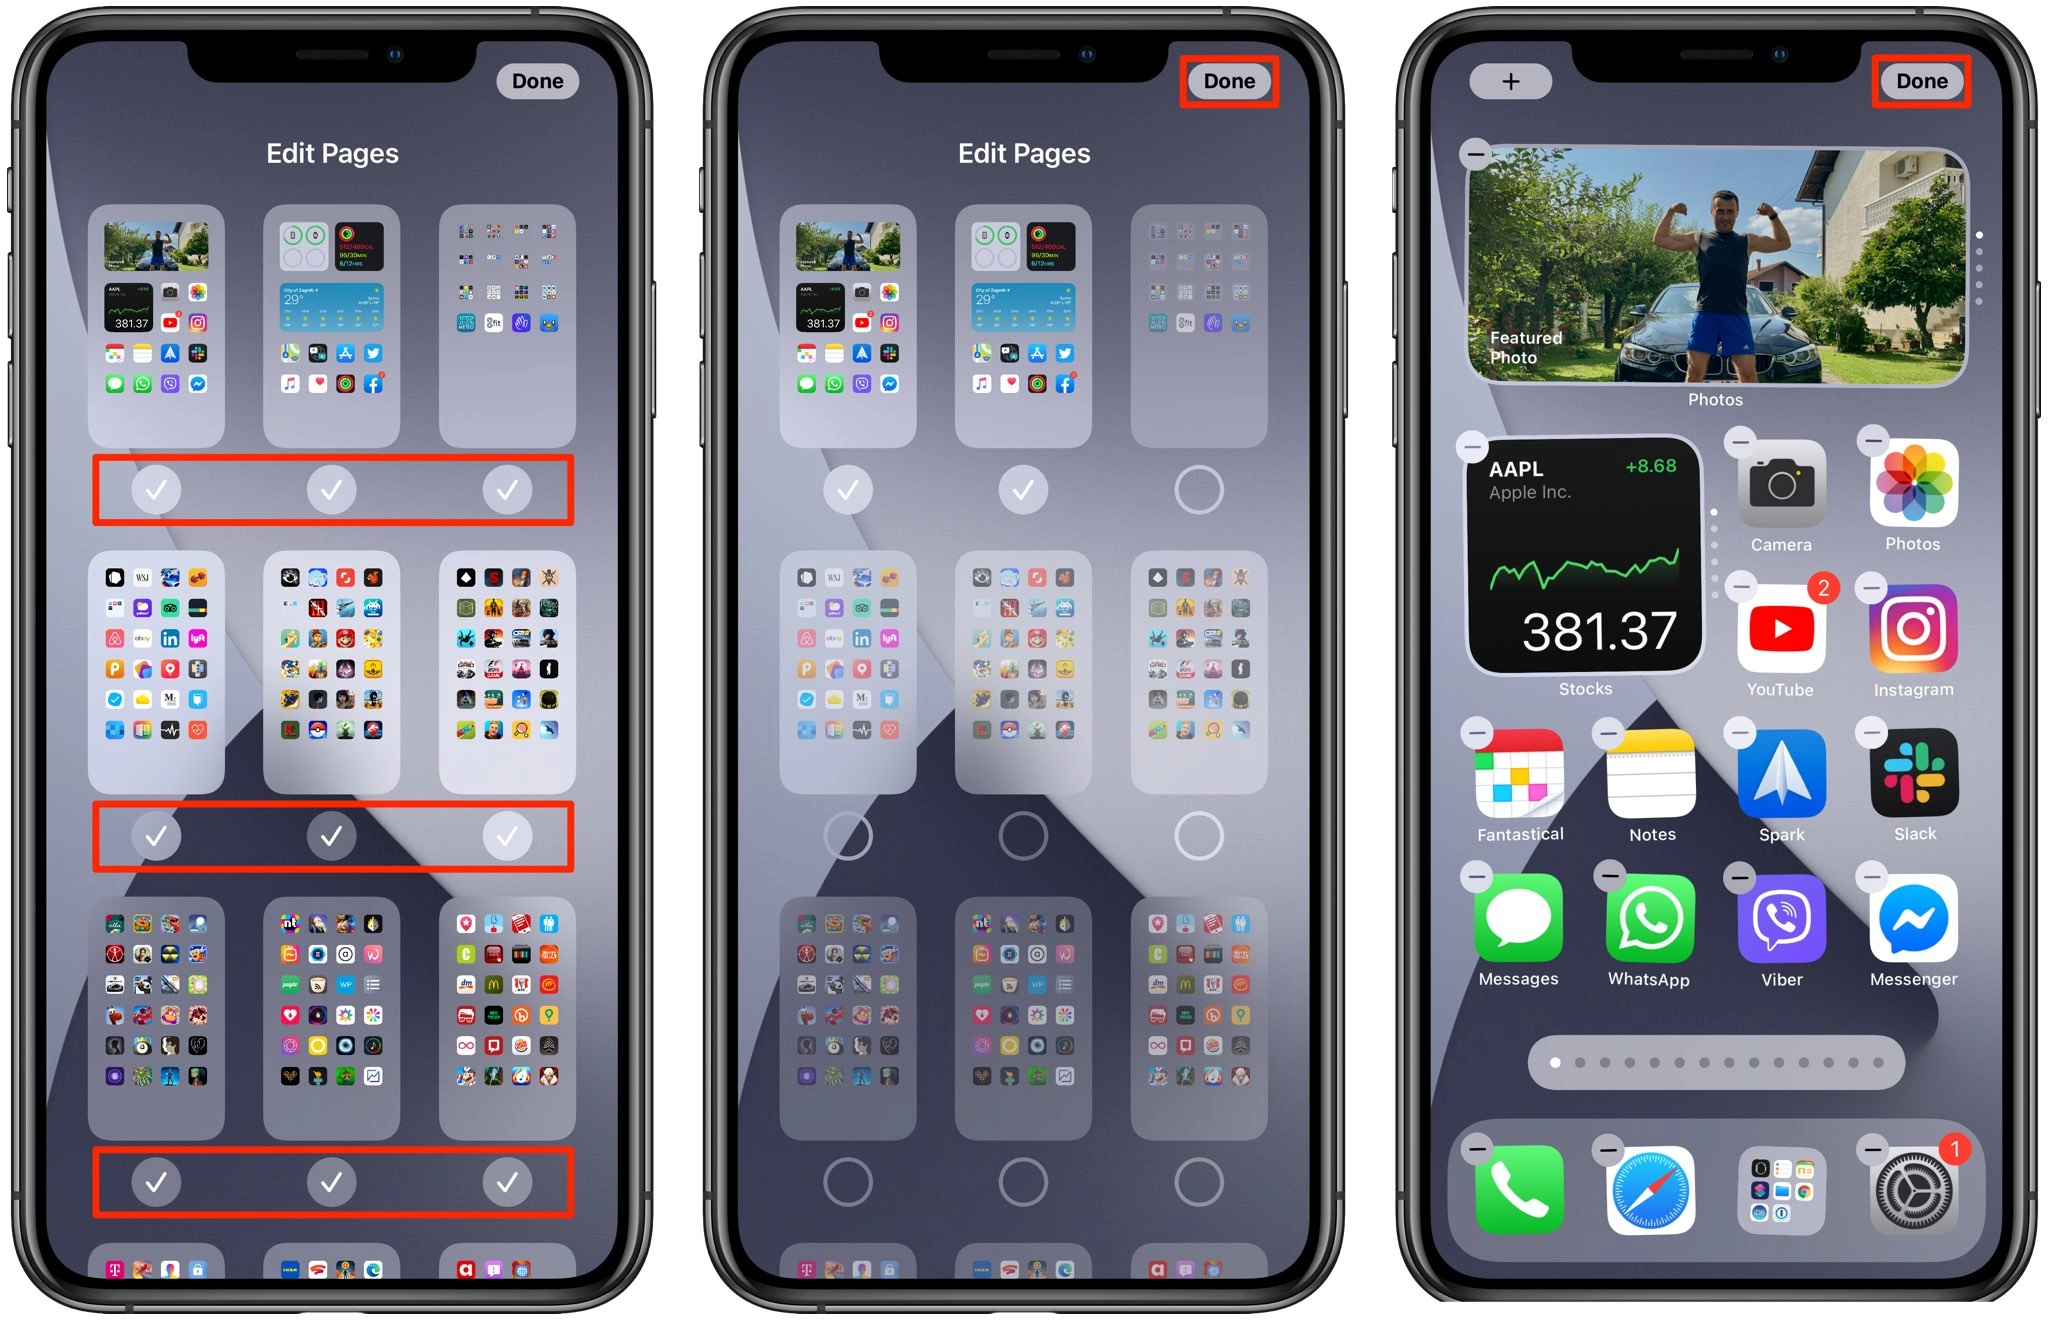 iOS ukryj strony aplikacji na ekranie głównym iPhone